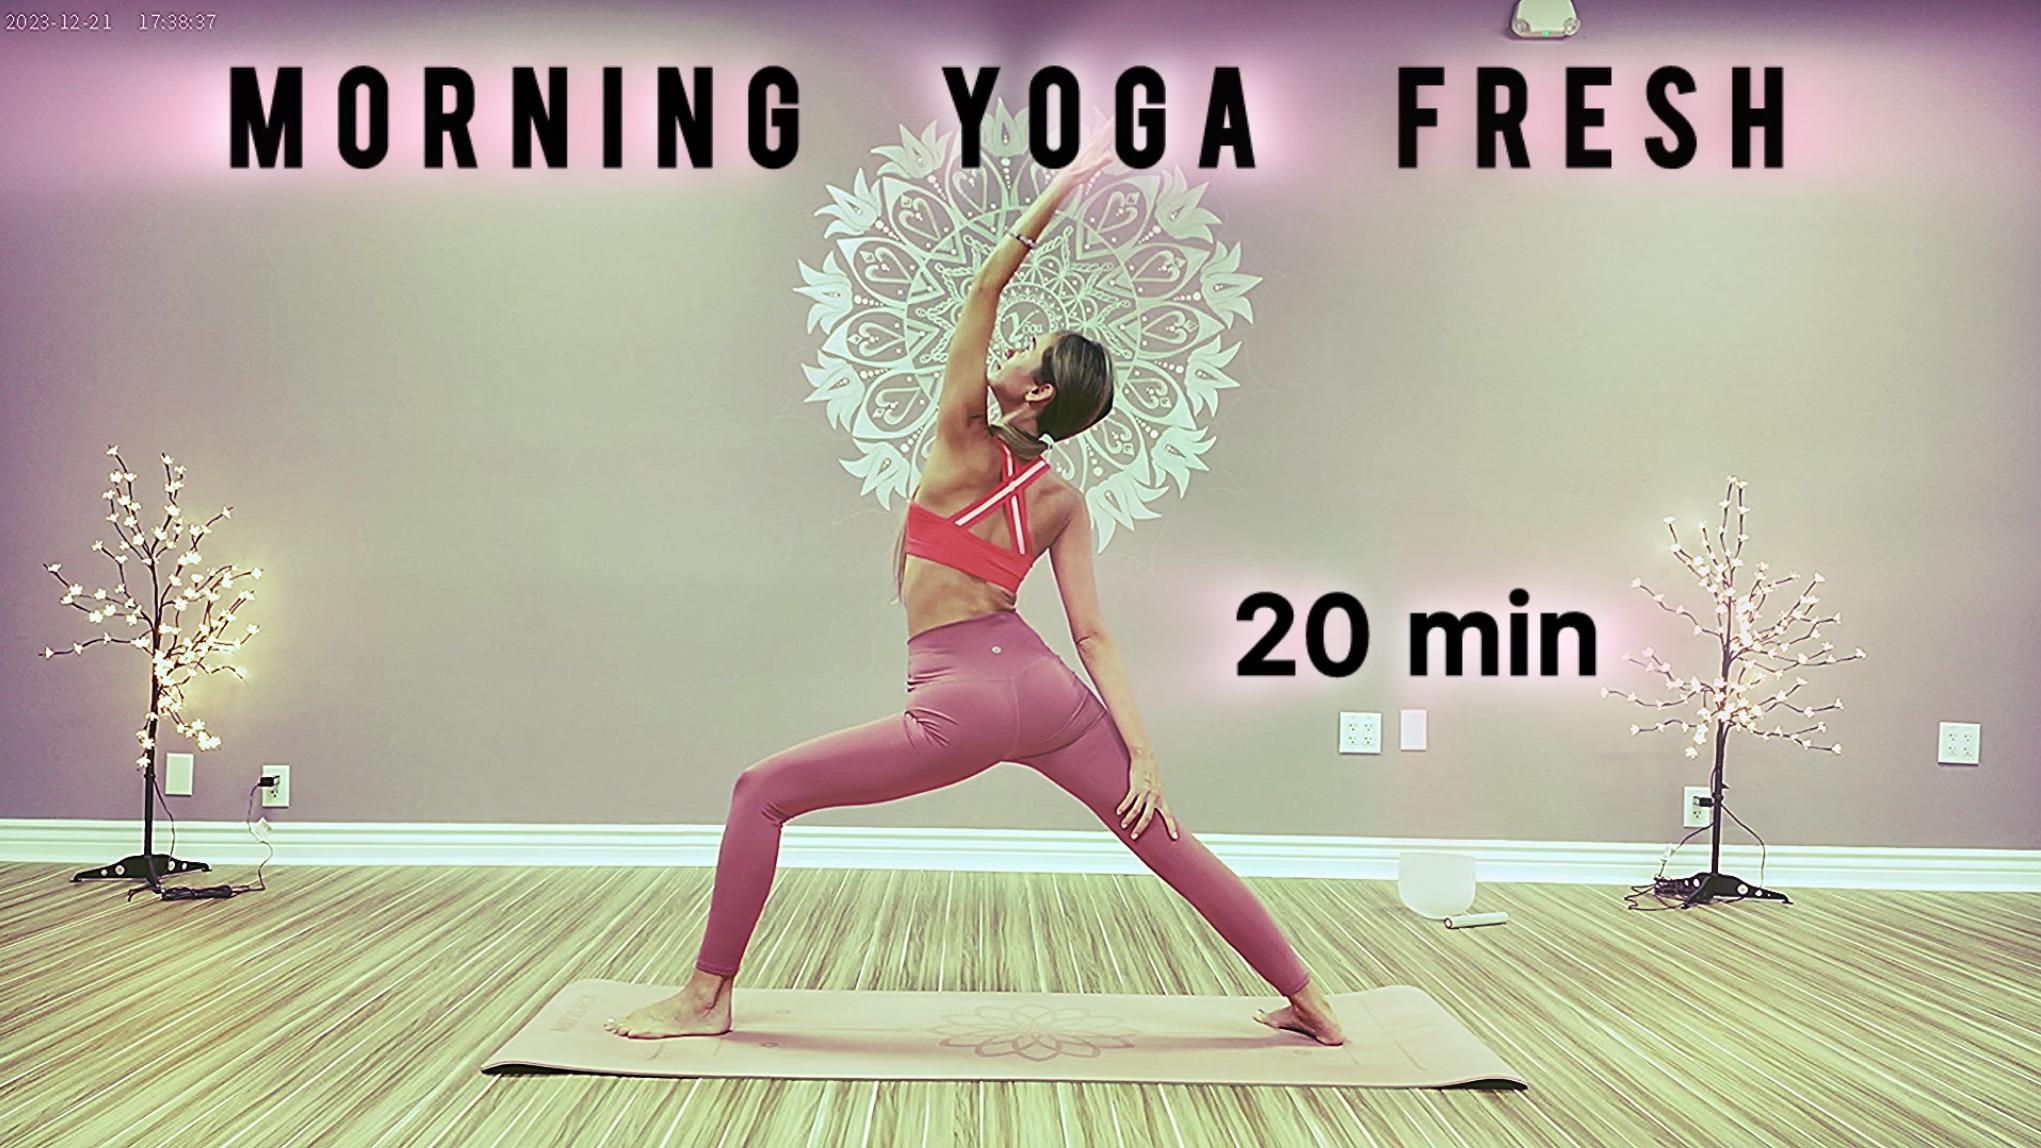 20 min morning yoga fresh